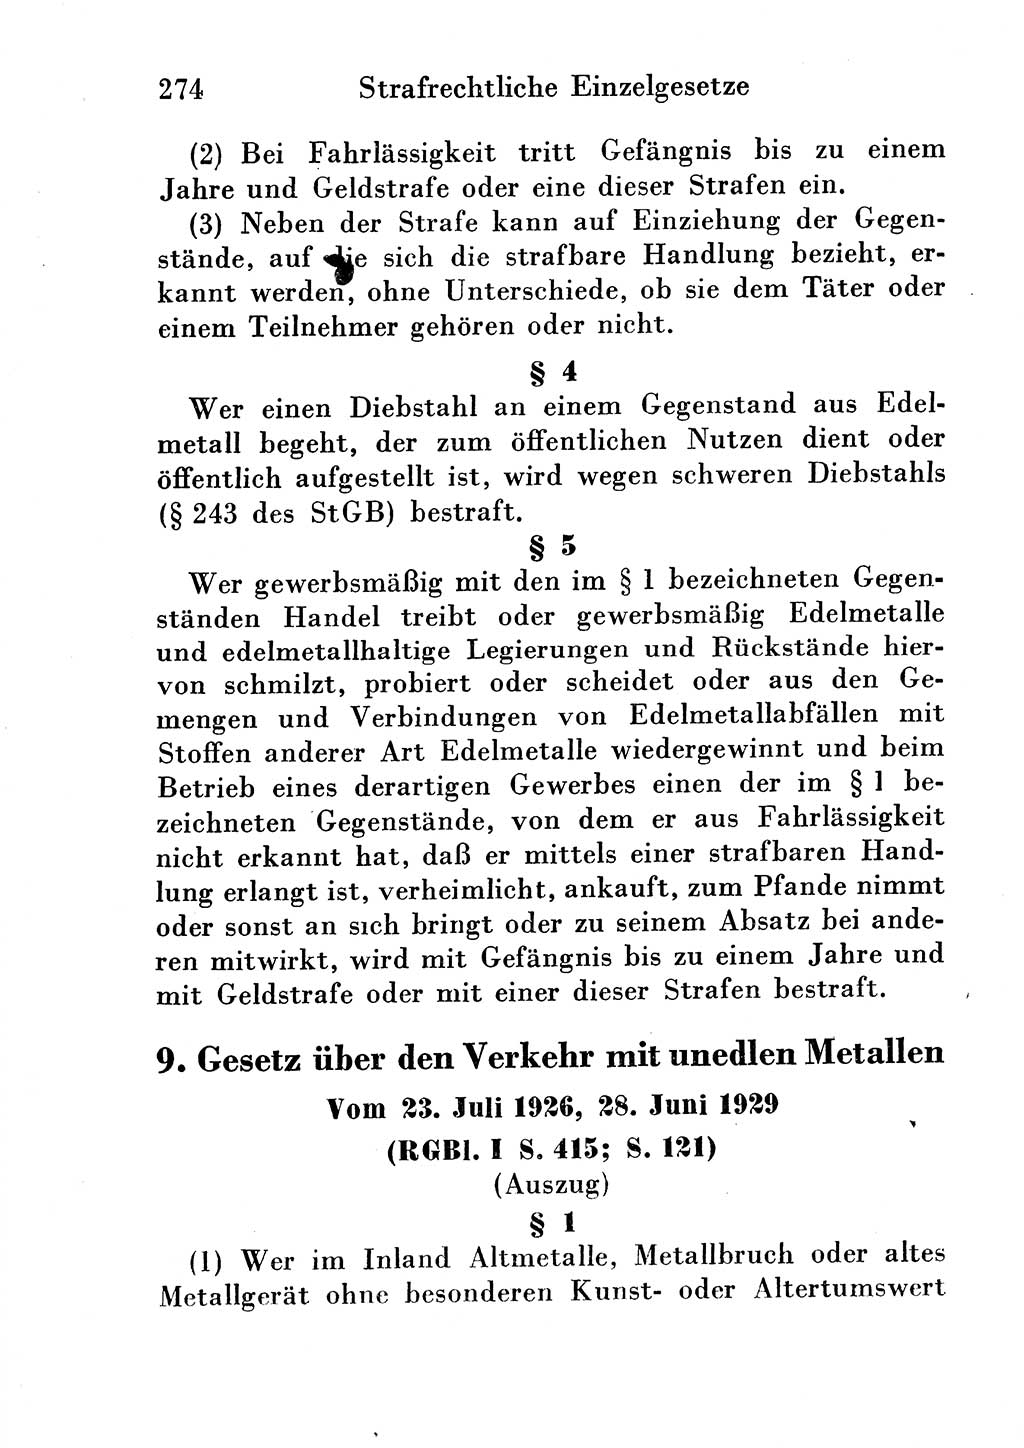 Strafgesetzbuch (StGB) und andere Strafgesetze [Deutsche Demokratische Republik (DDR)] 1954, Seite 274 (StGB Strafges. DDR 1954, S. 274)